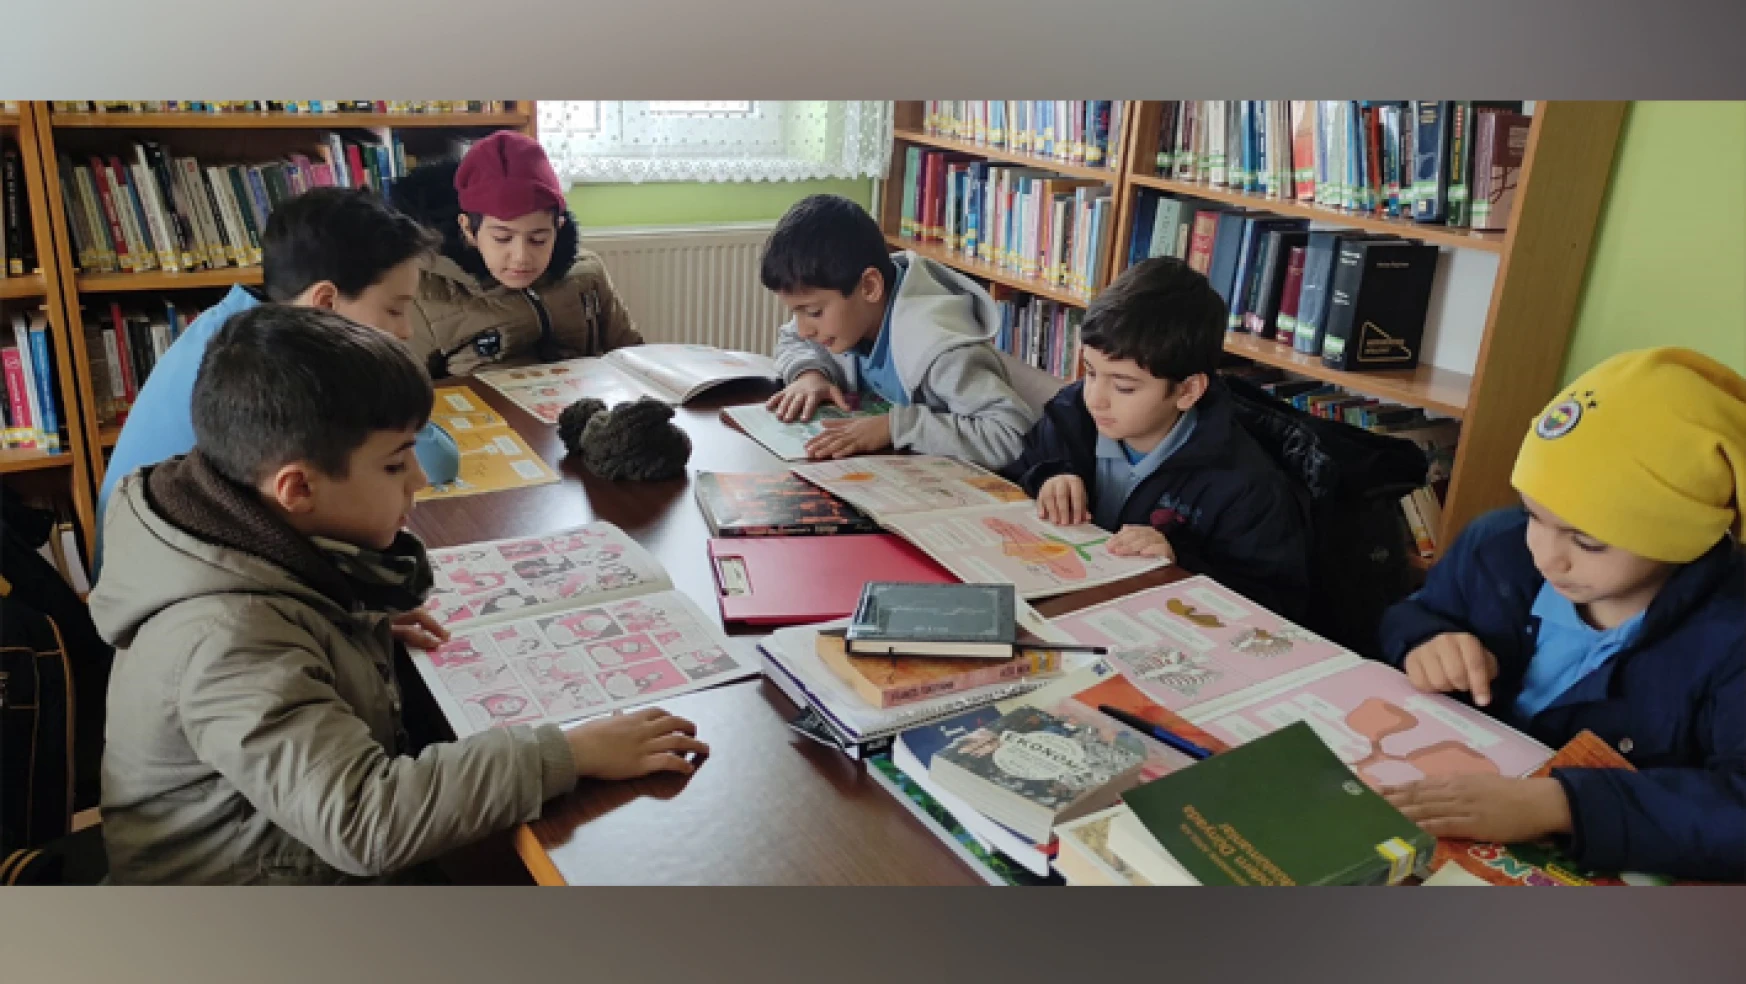 Sarayönü Halk Kütüphanesine gezi düzenlendi